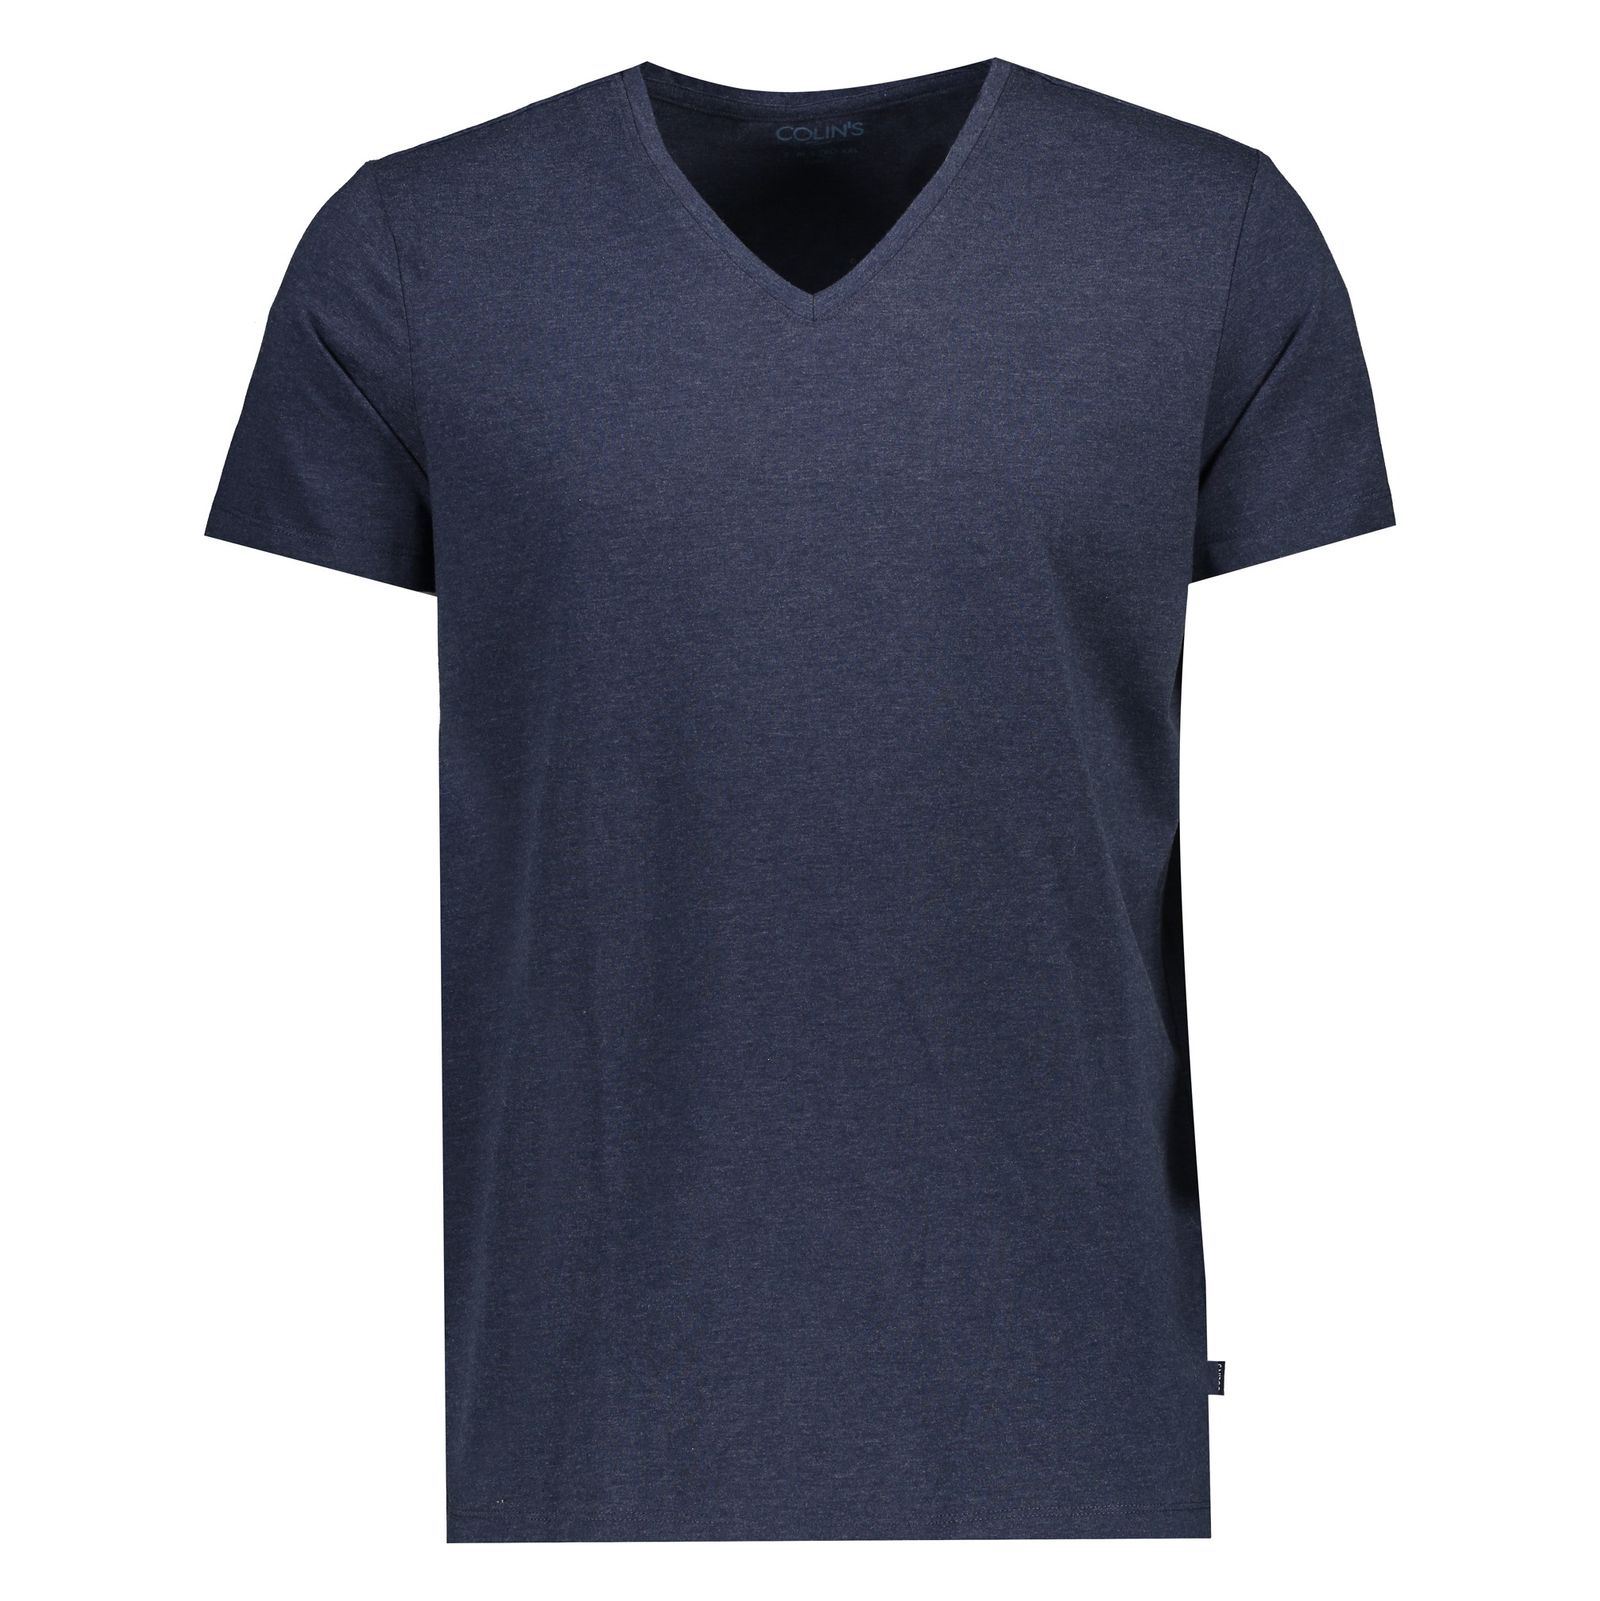 تی شرت مردانه کالینز مدل CLTKTMTSH0240850-MNV - سرمه ای - 2